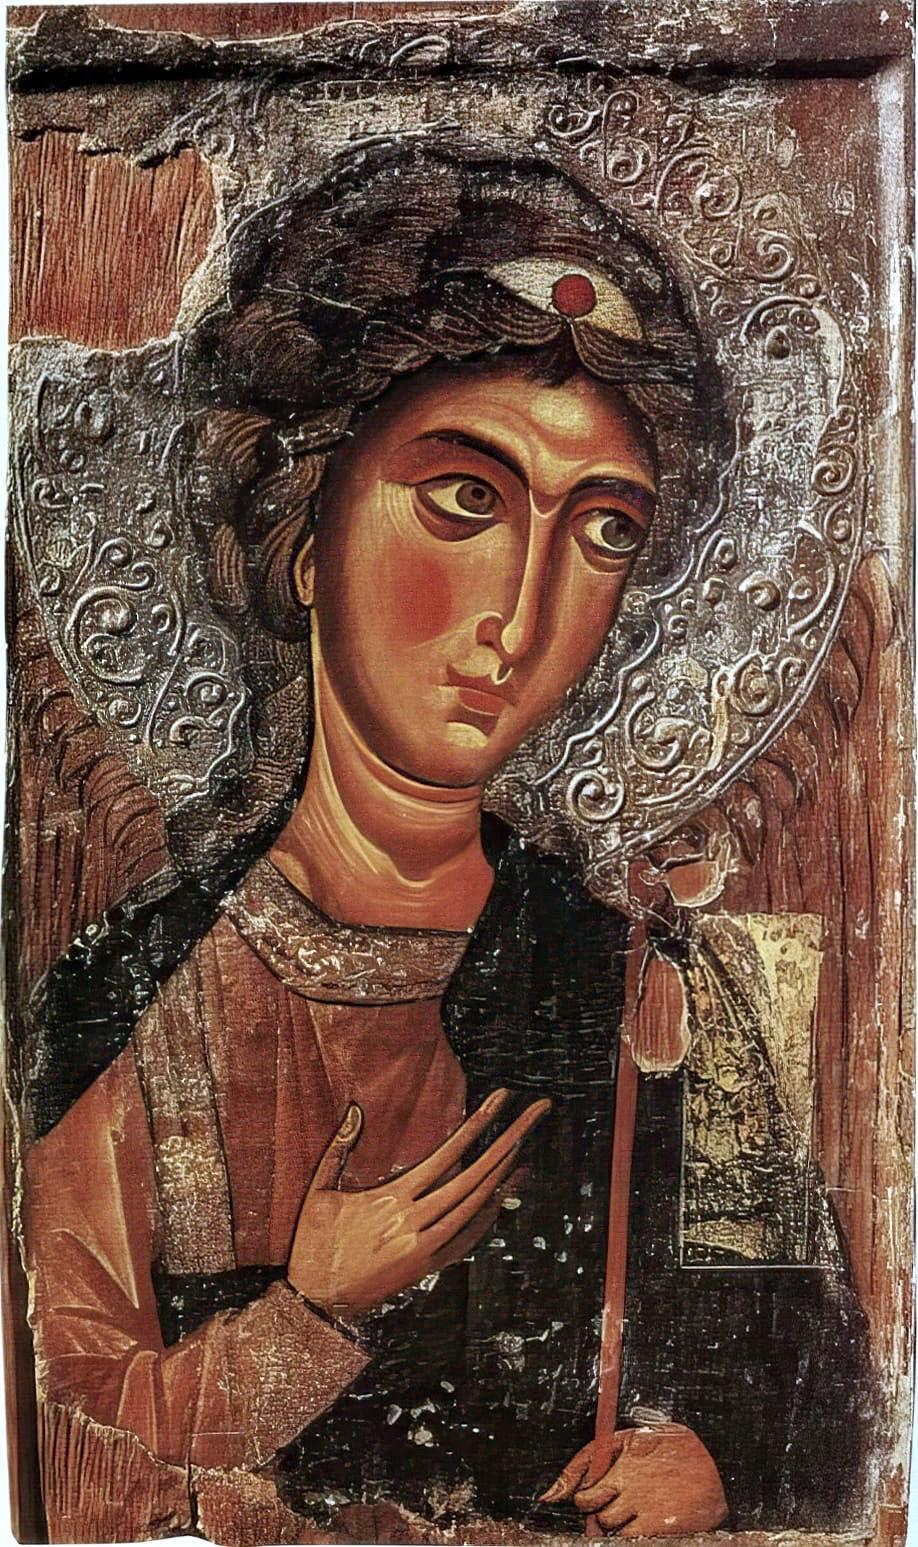 Ο Αρχάγγελος Μιχαήλ (εικόνα), ως το 1974 στη Μονή Αγίου Ιωάννου του Χρυσοστόμου στον Κουτσοβέντη, Κύπρος.